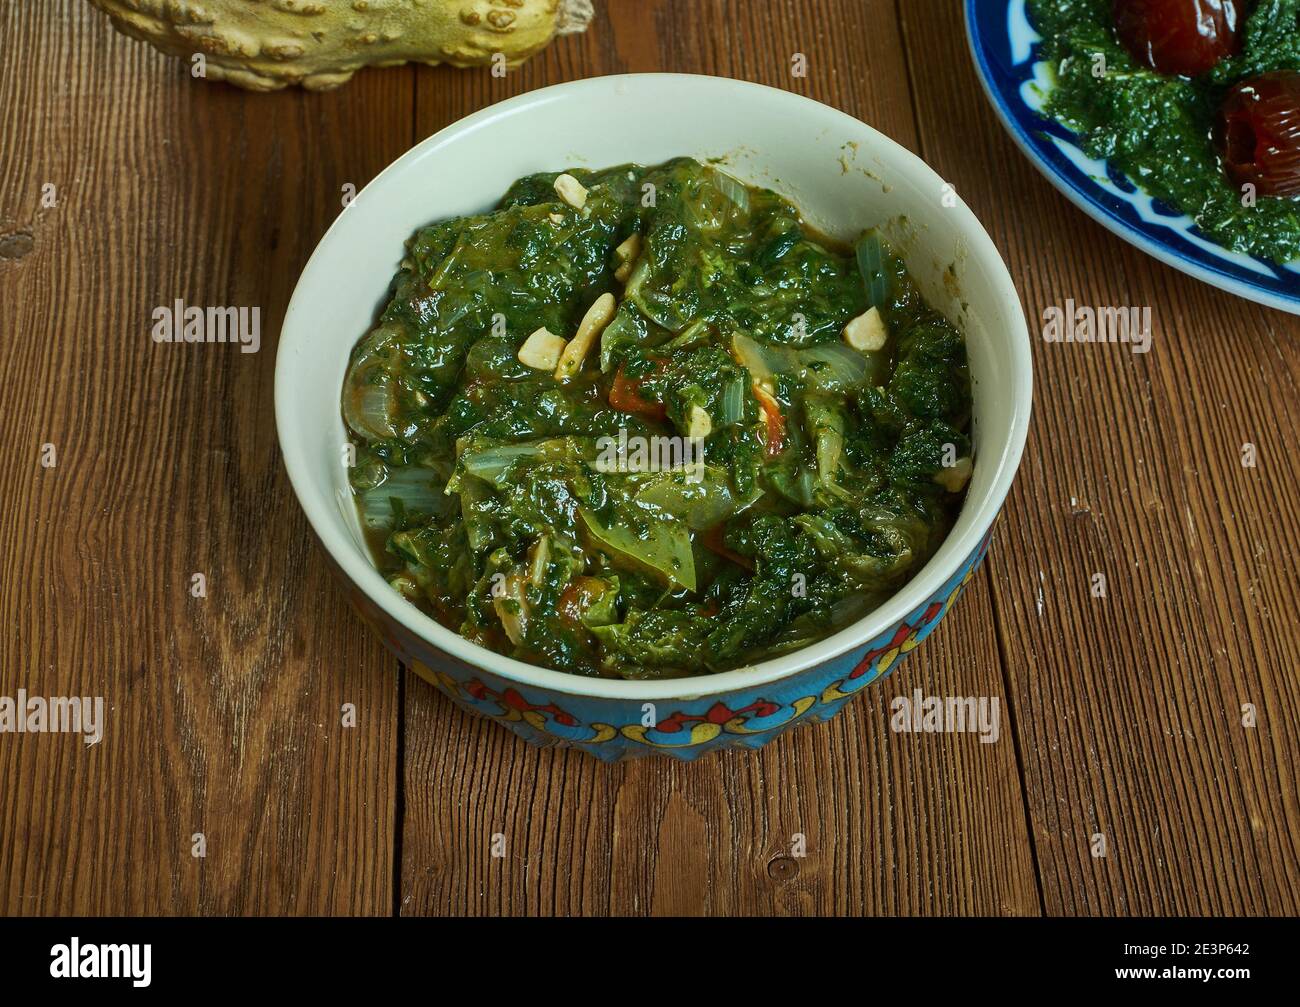 Le Kpwem est un plat végétarien du Cameroun, composé de feuilles de manioc jeunes et tendres. Banque D'Images